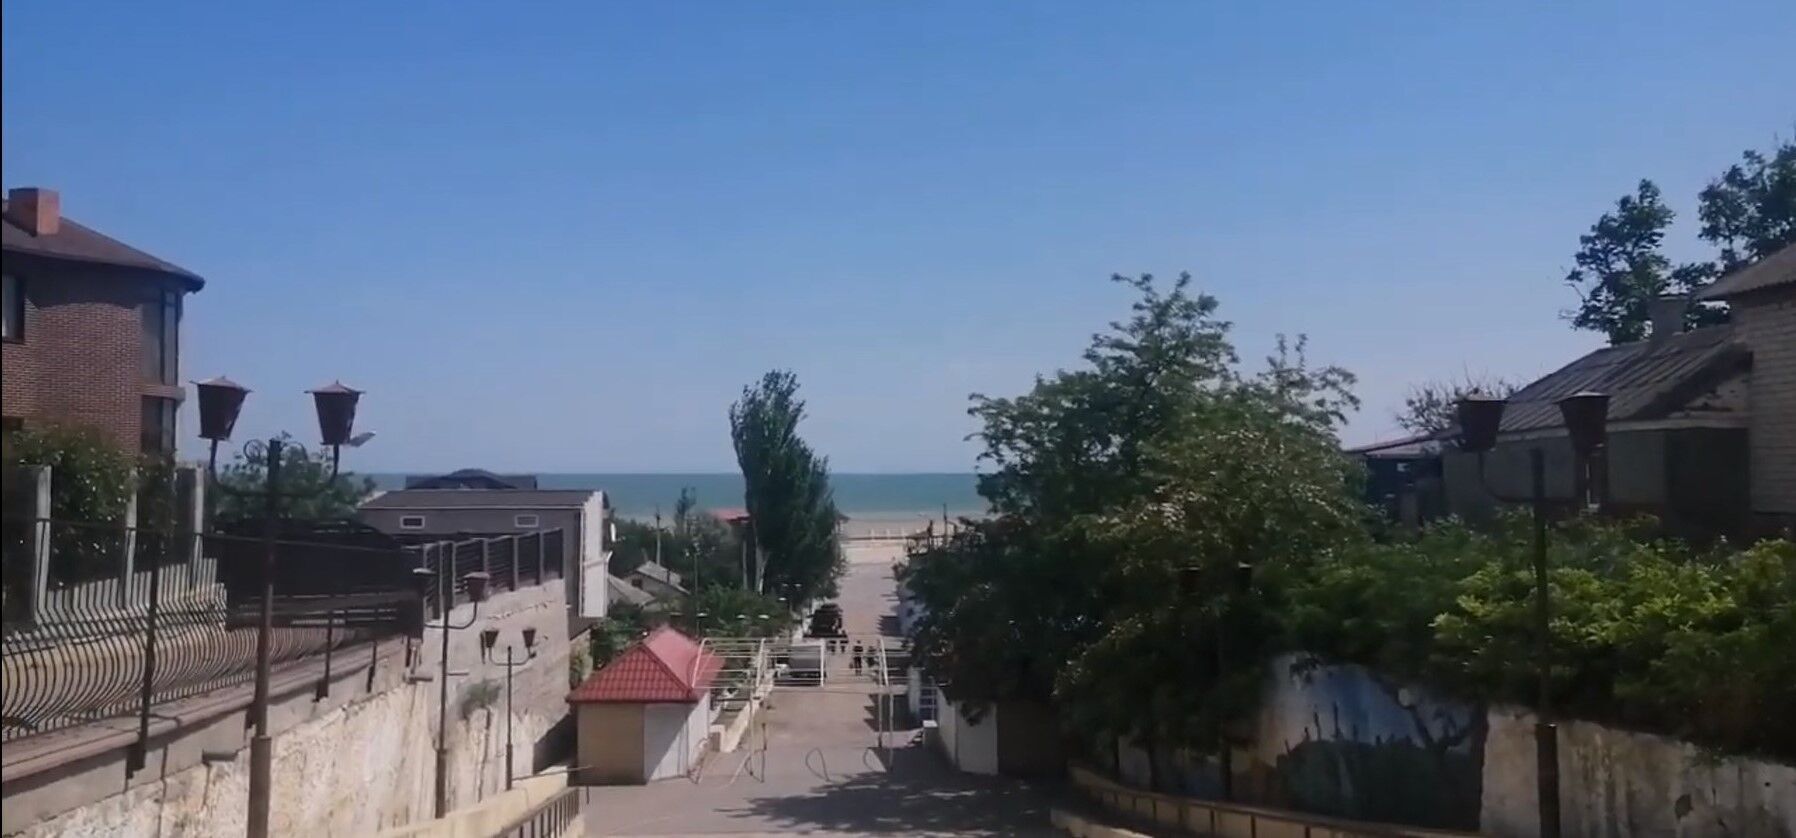 Запустіння та розруха: як виглядають в окупації курорти Кирилівка та Генічеськ, які раніше приймали багато туристів. Відео